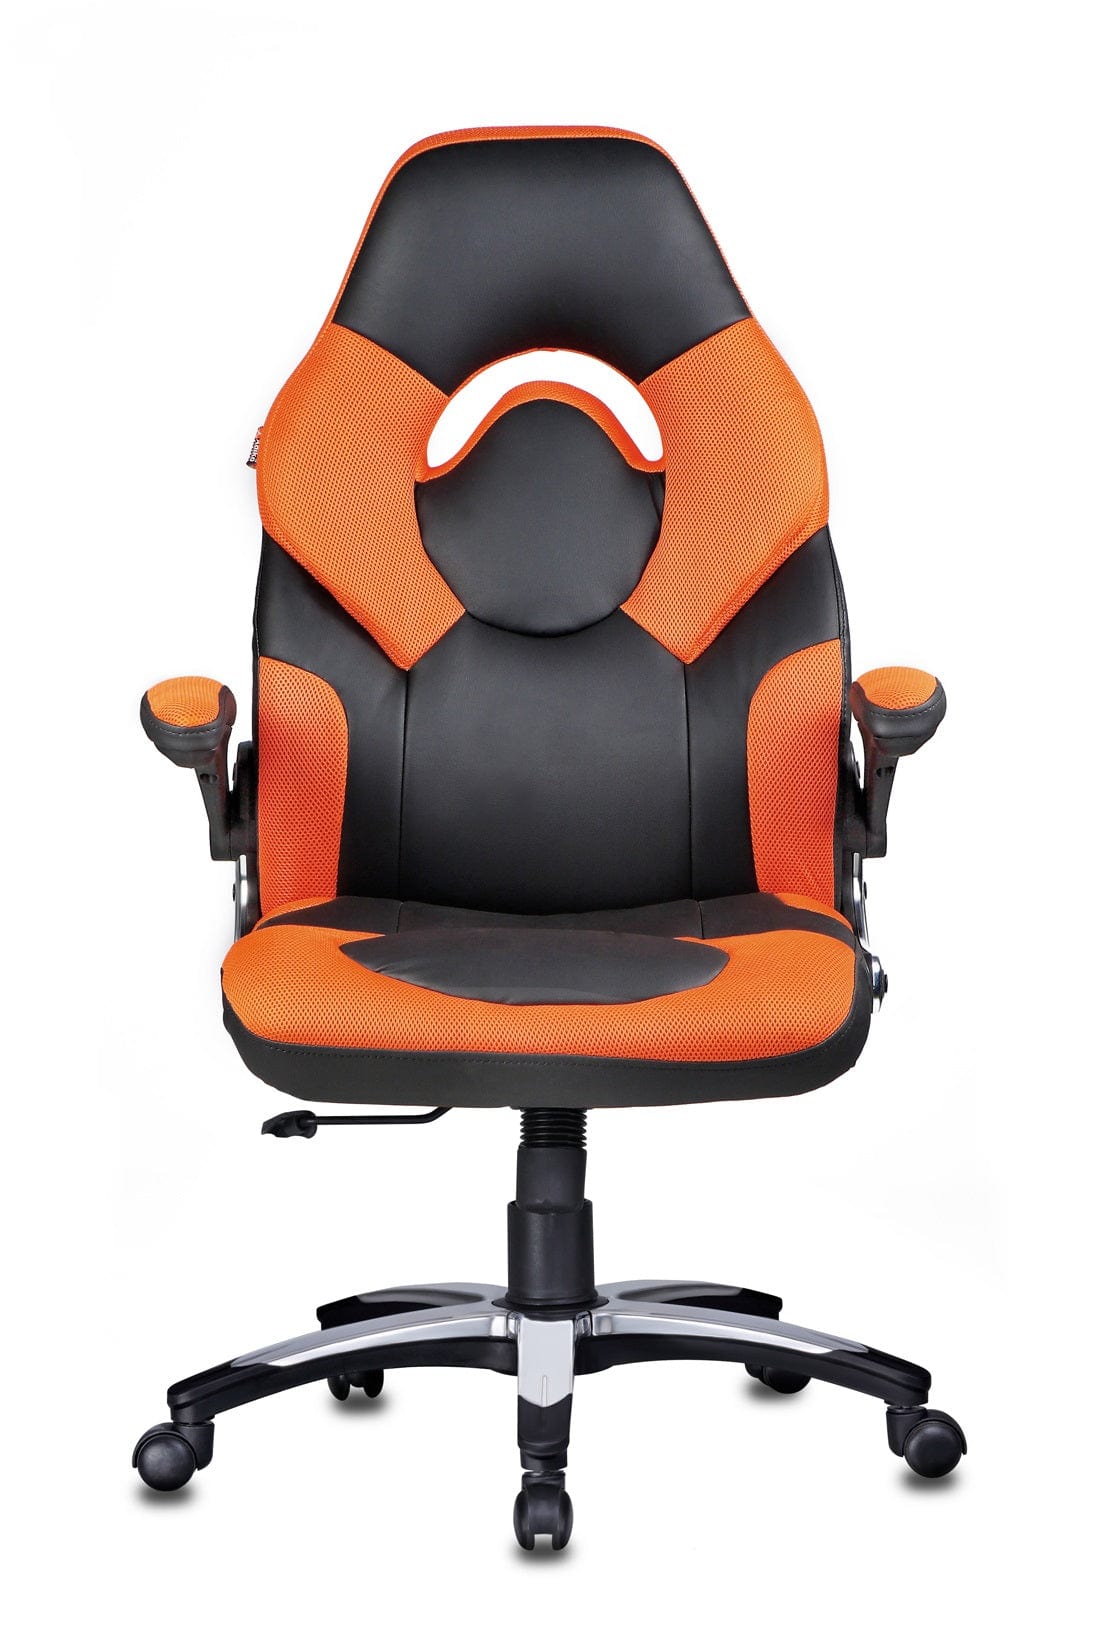 Stylish Designer chair in Black / Orange